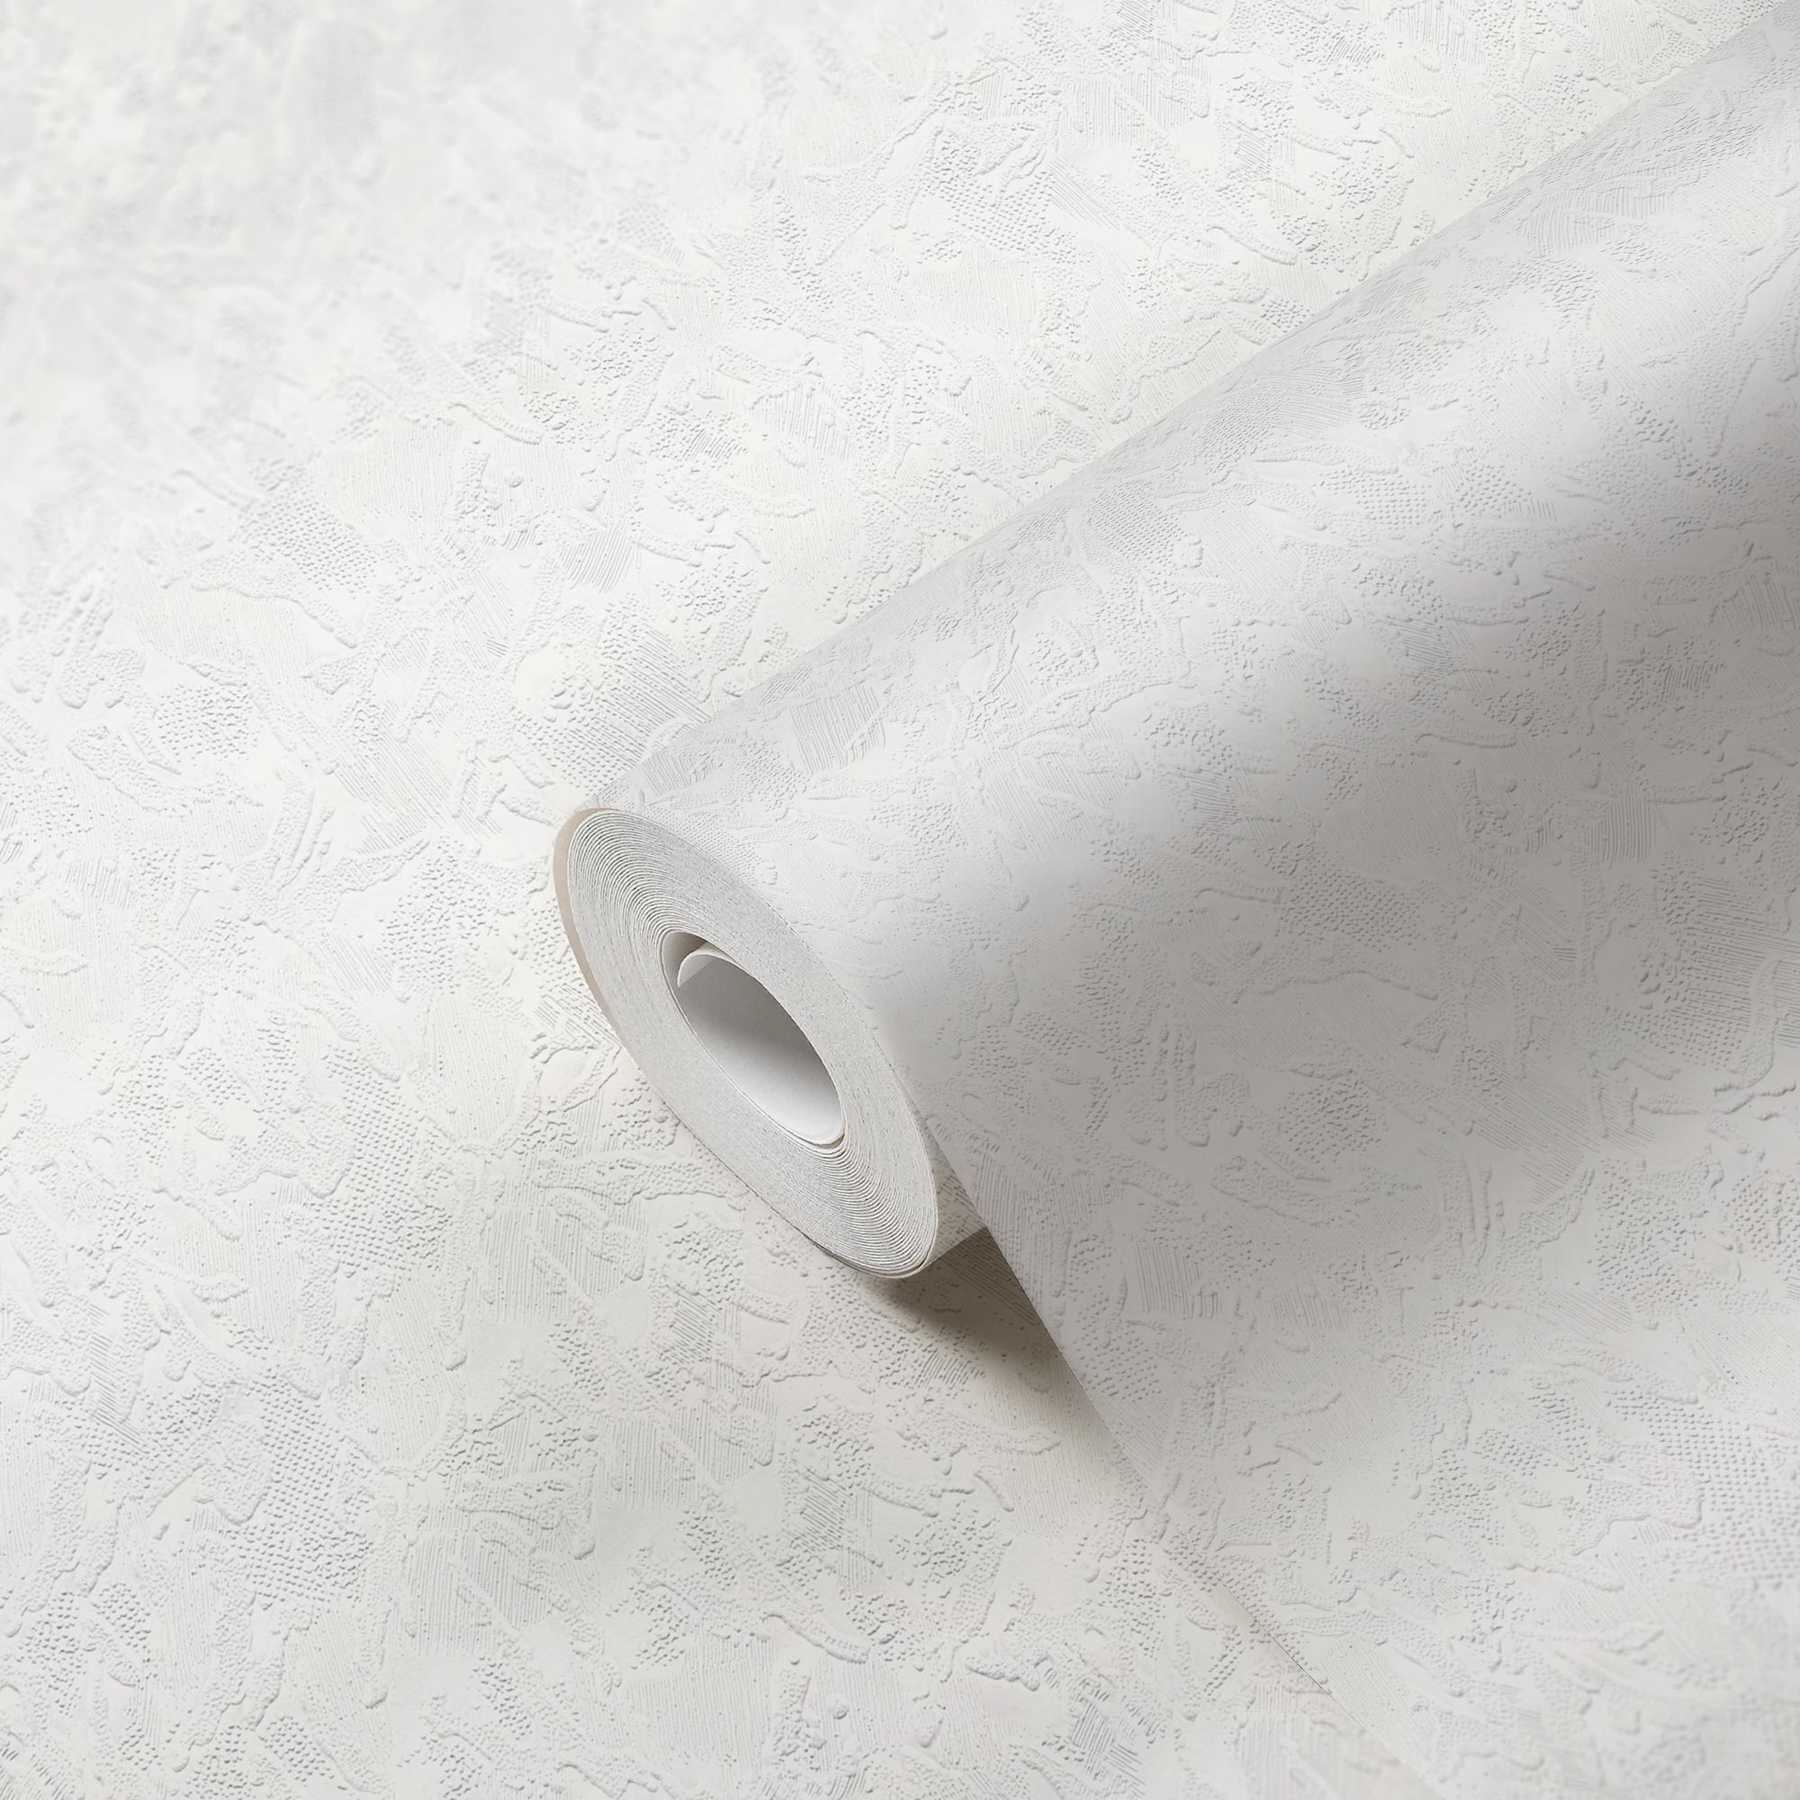             Gipsachtig behang met bedrieglijk gestructureerd oppervlak - wit
        